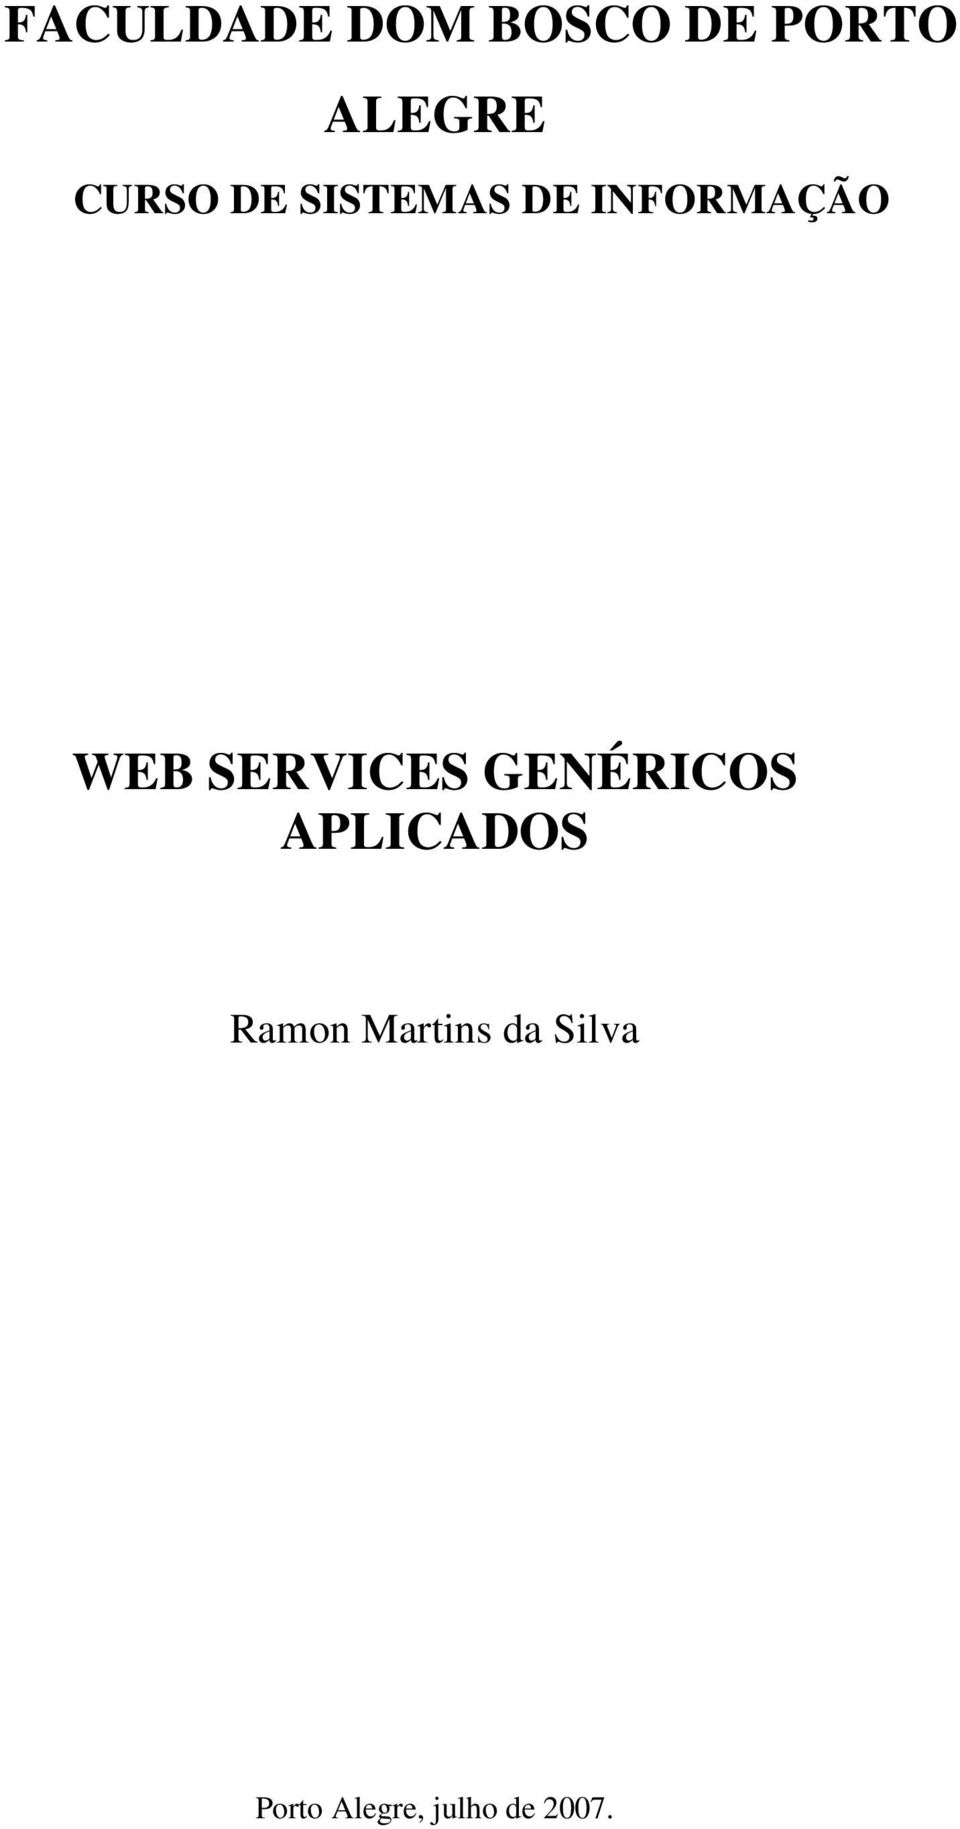 SERVICES GENÉRICOS APLICADOS Ramon